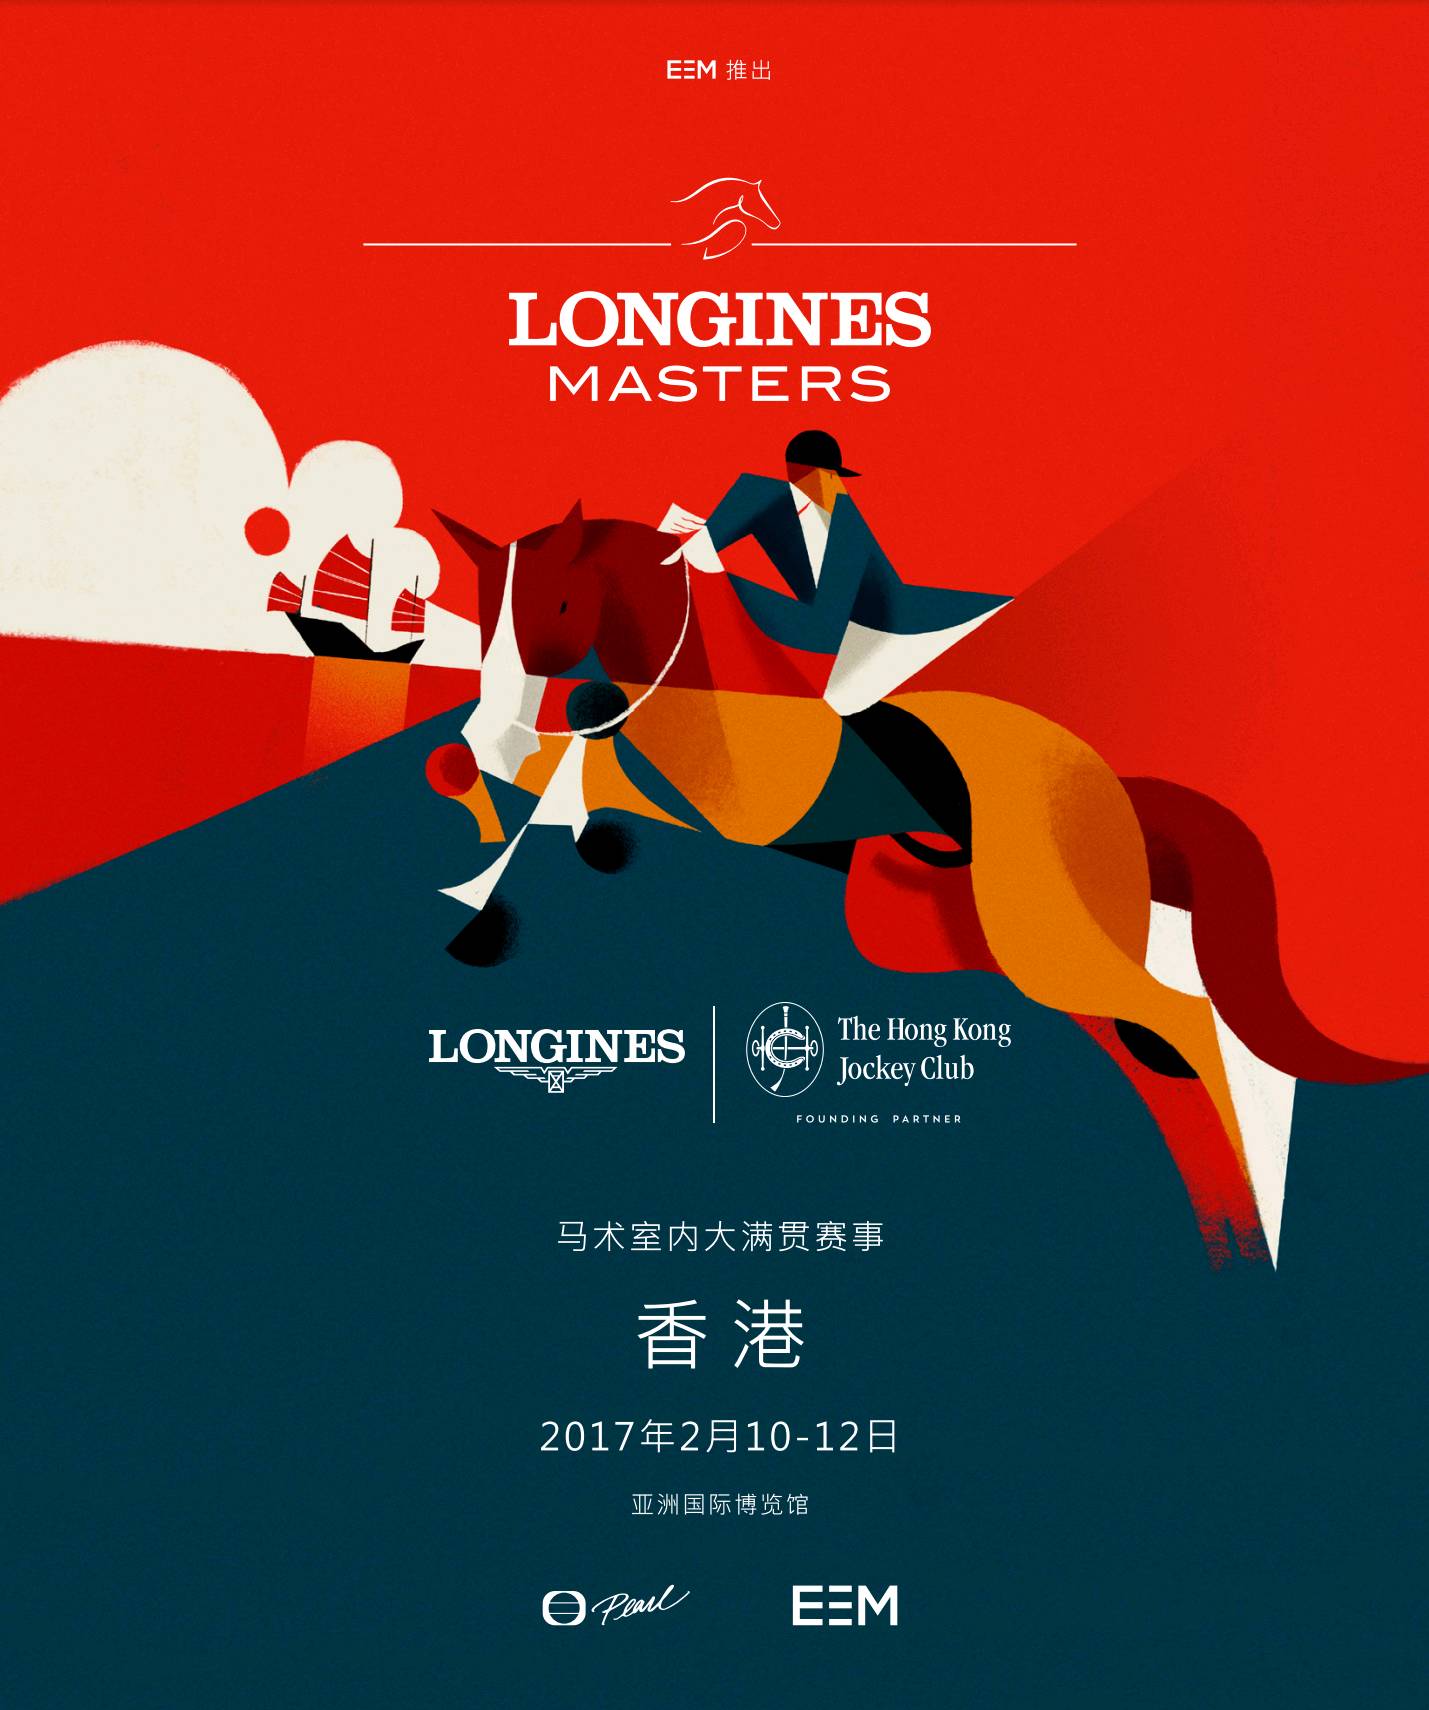 eem 推出2017浪琴表香港马术大师赛 